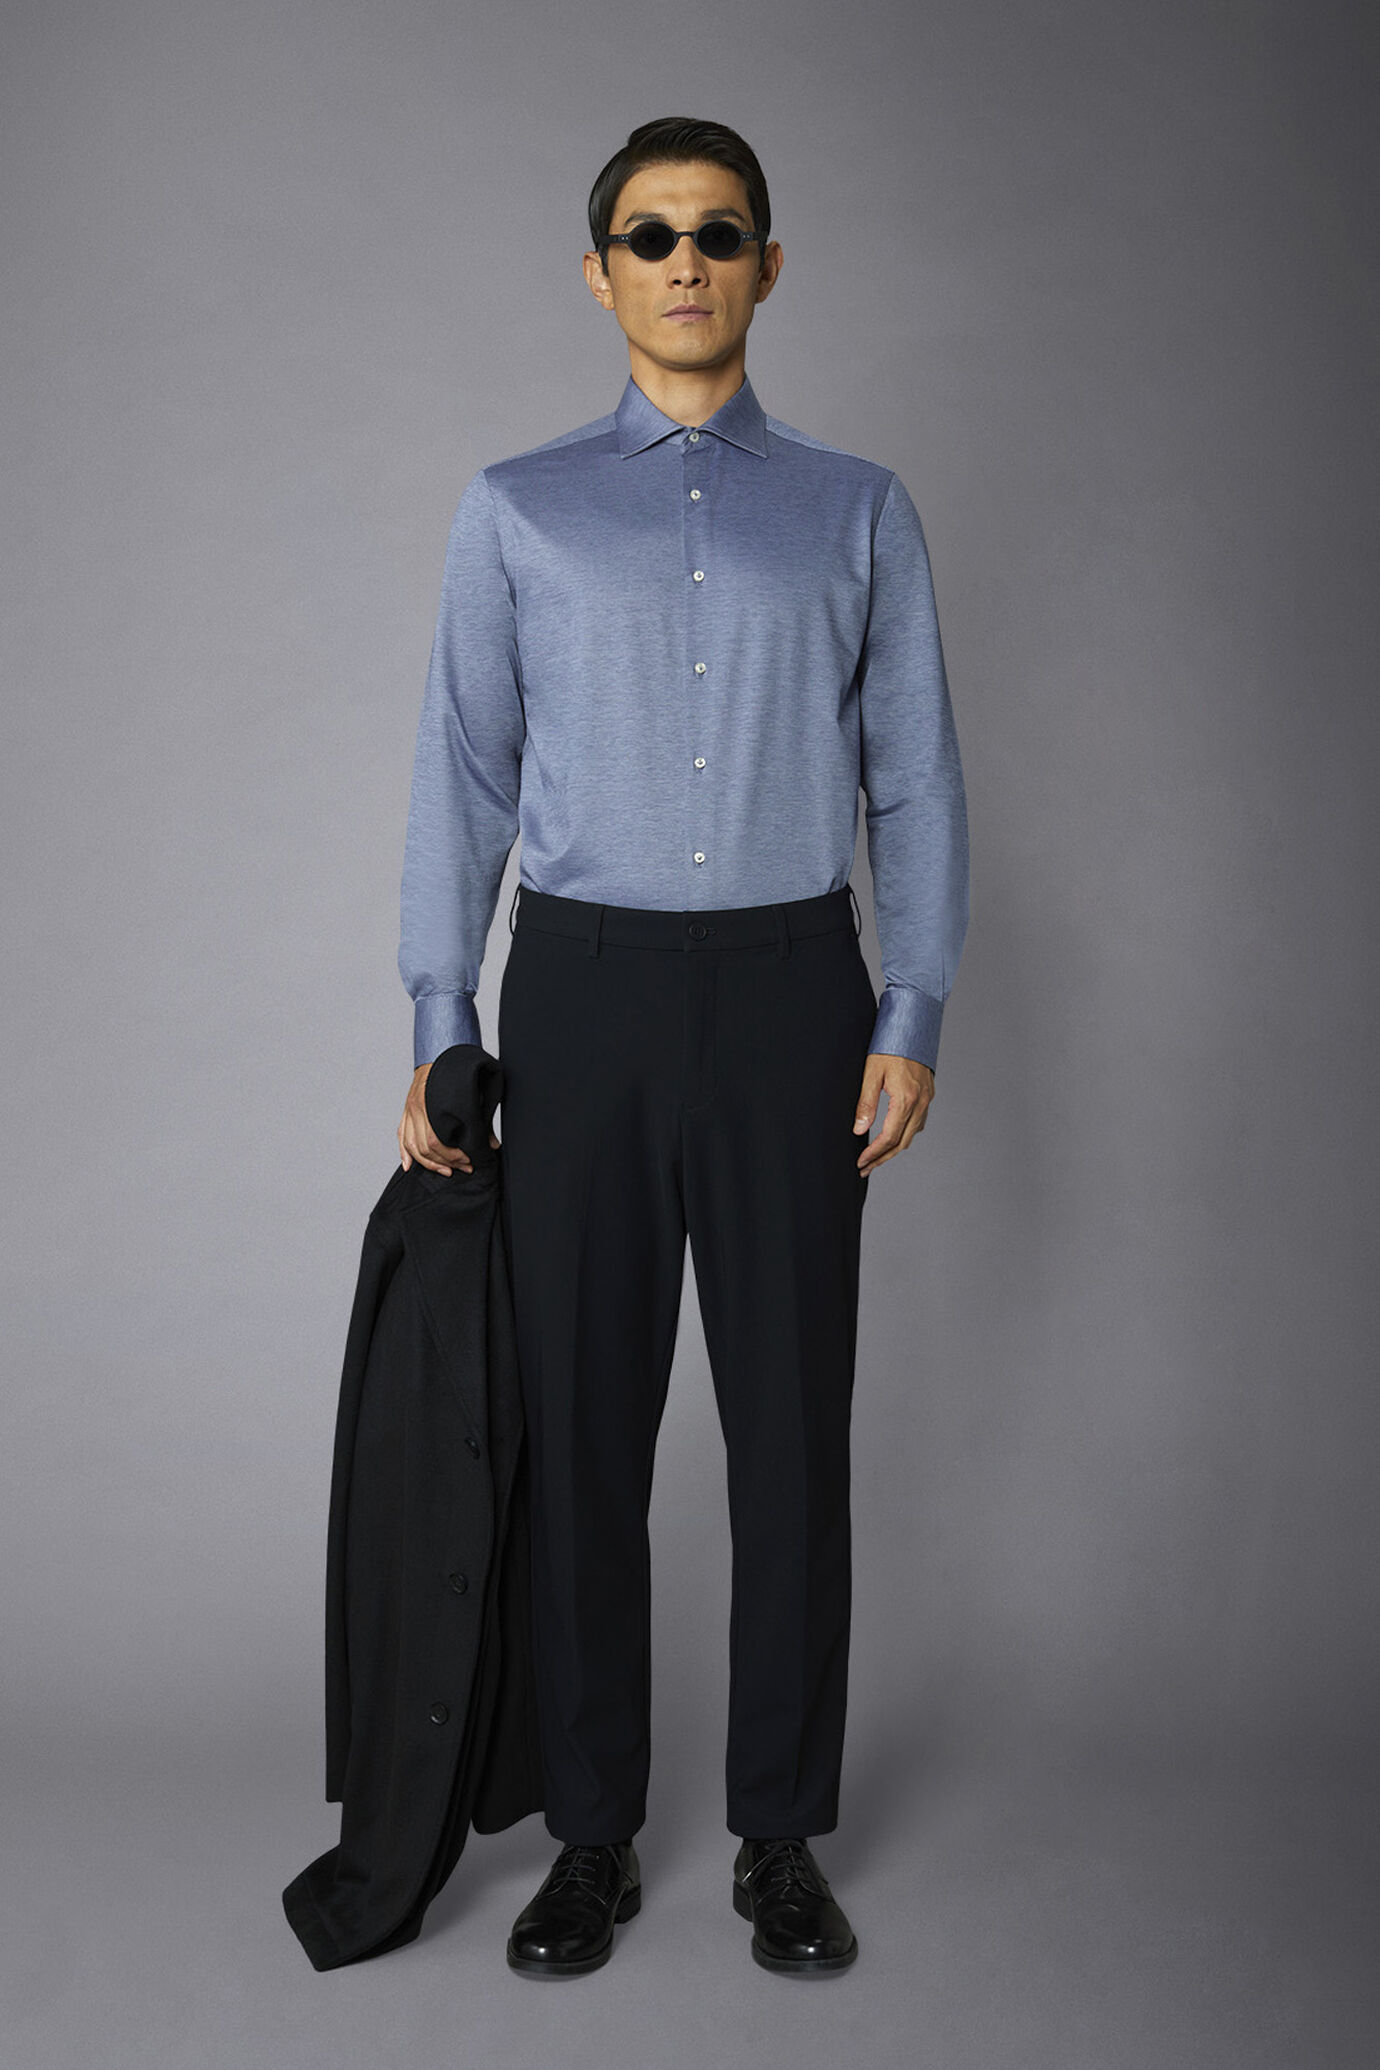 Pantalone chino uomo tessuto in nylon elasticizzato comfort fit image number 0